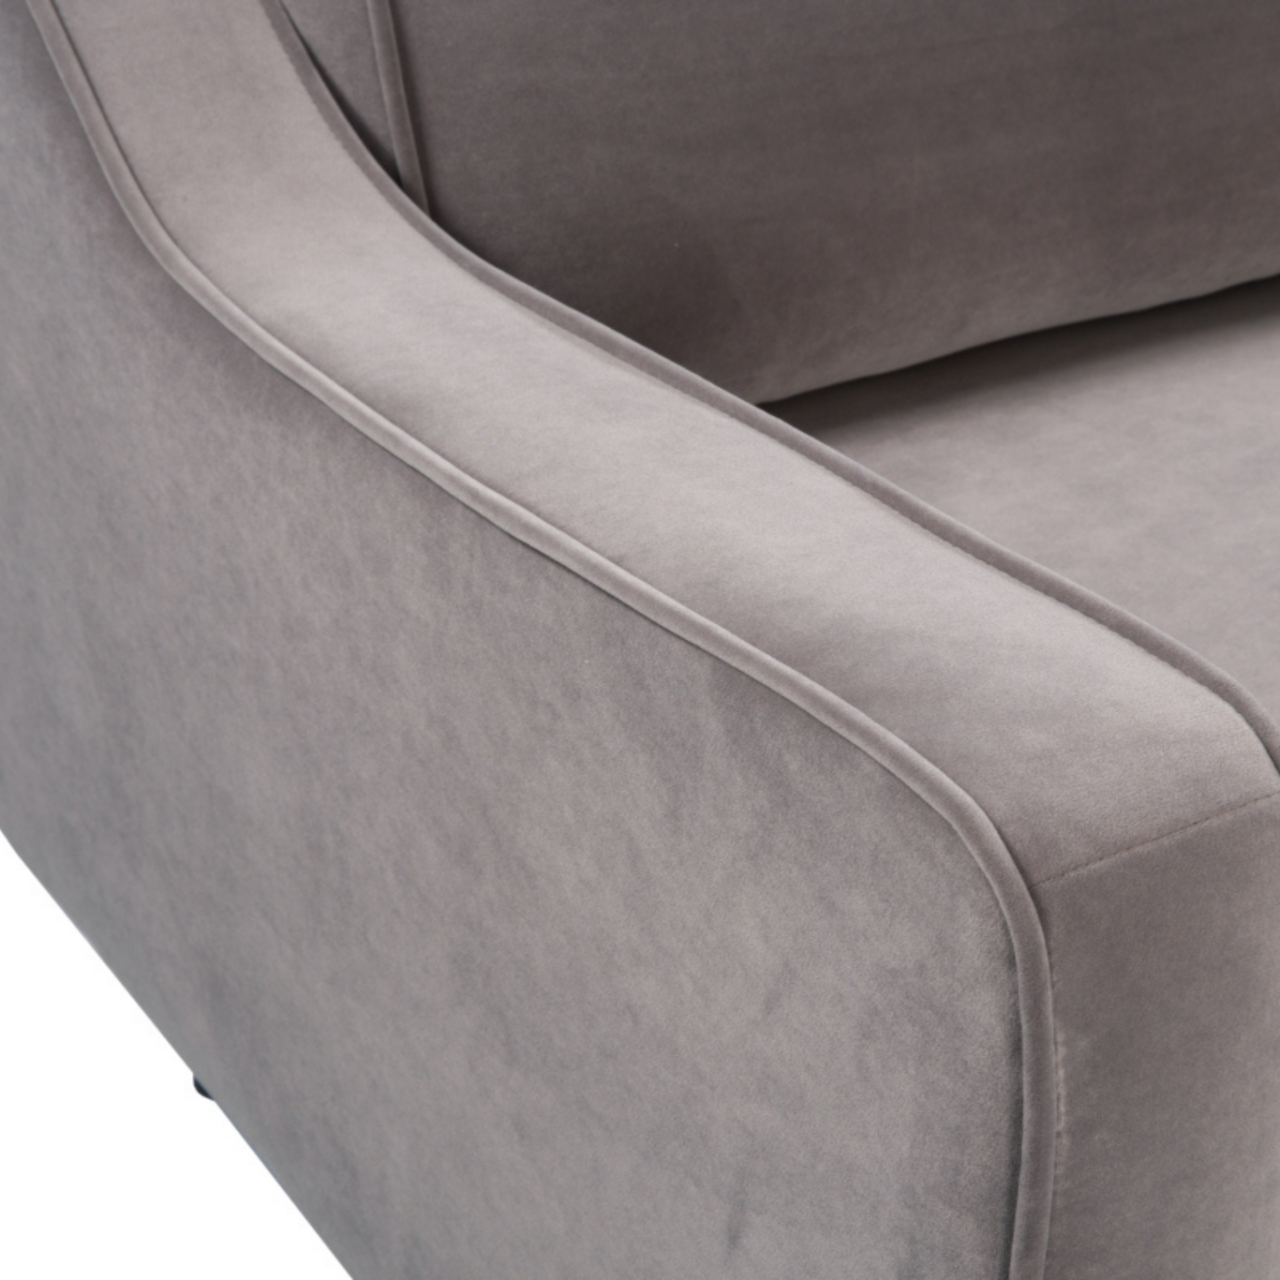 detail of detail of simple, modern 2.5 seater sofa upholstered  in stone grey velvet